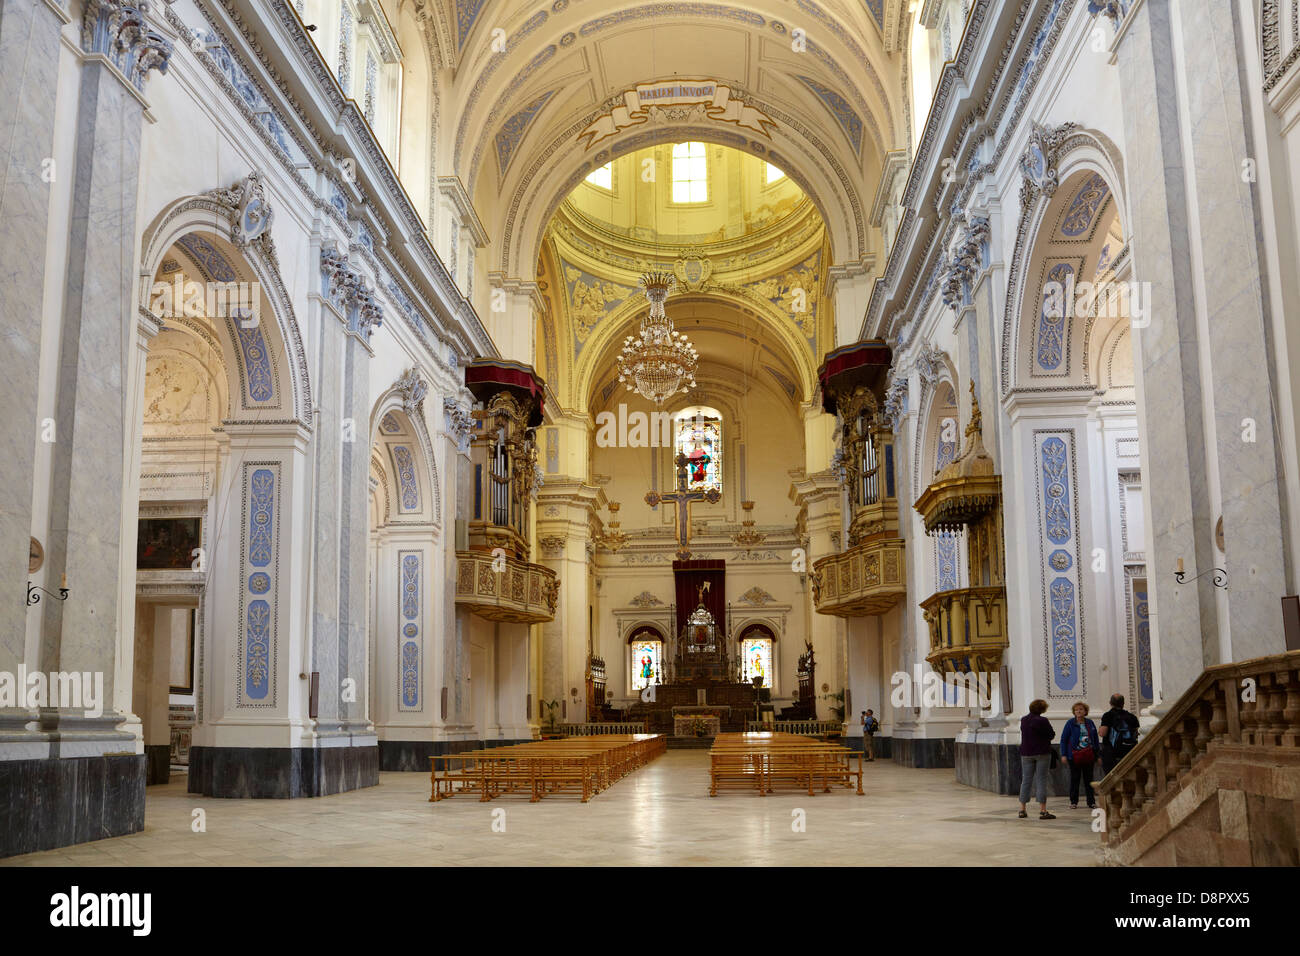 Piaza Armerina, vue de l'intérieur de la cathédrale baroque de 1768, Sicile, Italie Banque D'Images